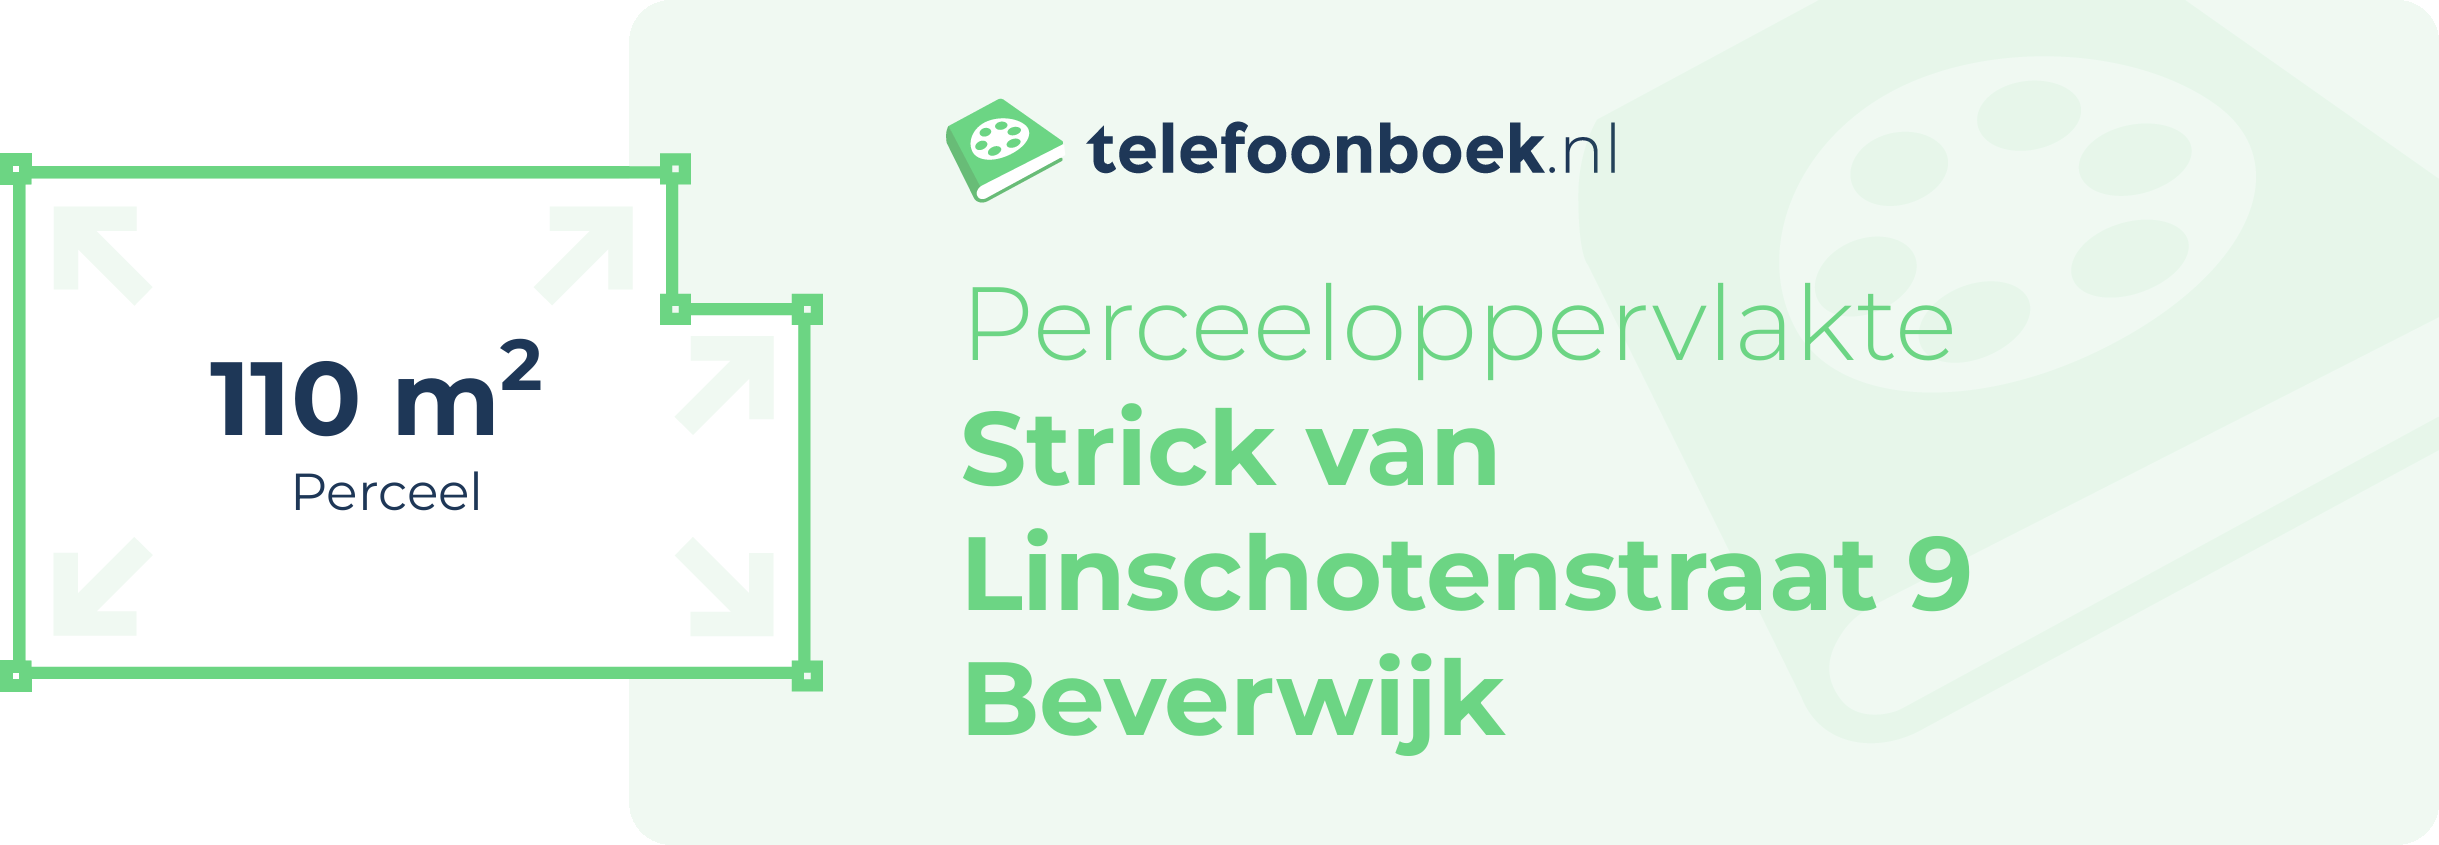 Perceeloppervlakte Strick Van Linschotenstraat 9 Beverwijk